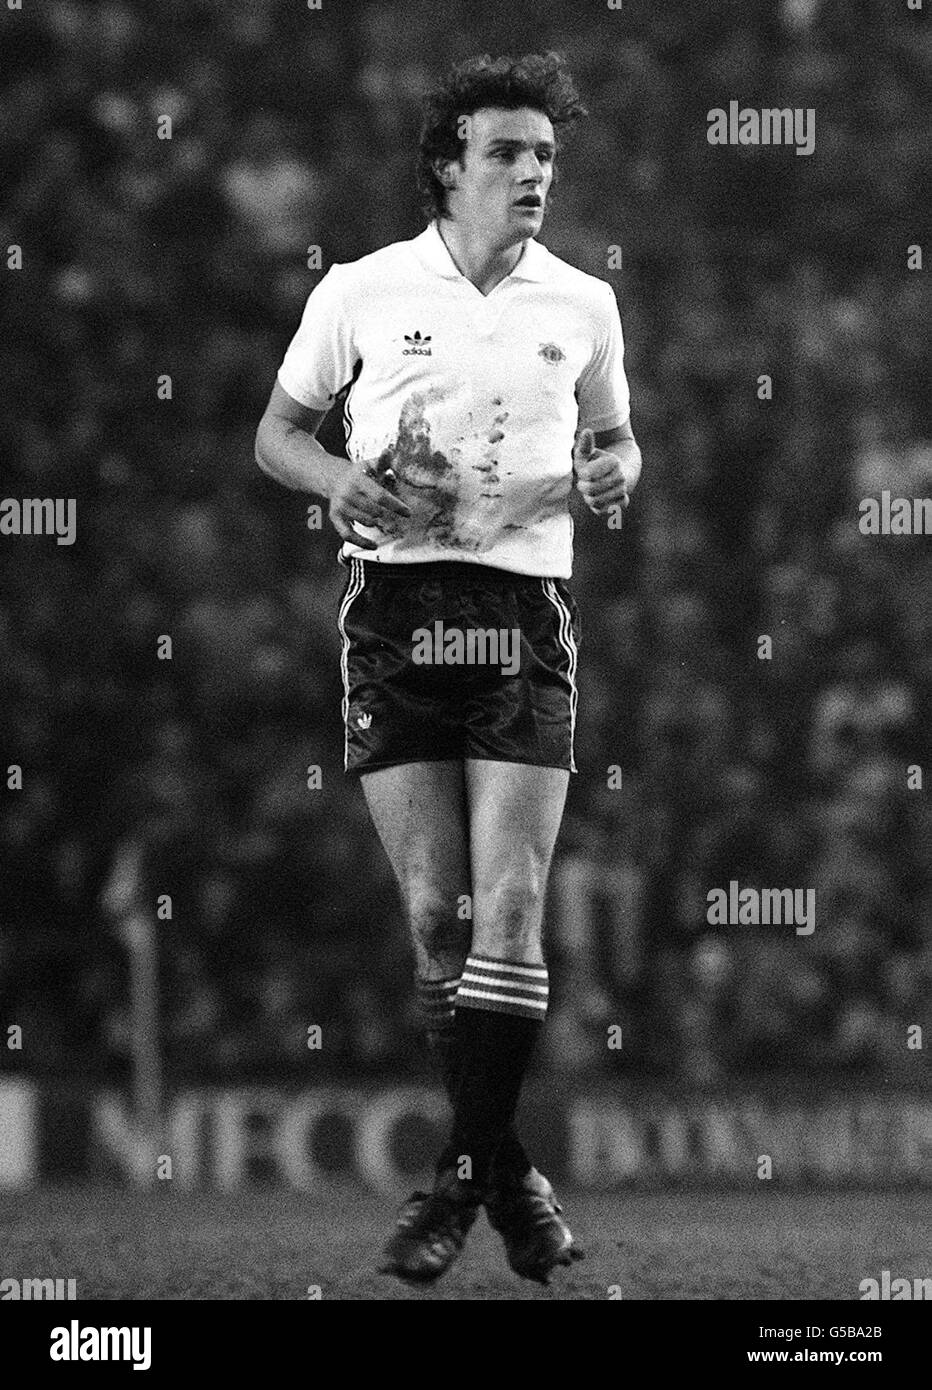 Man Utd Kevin Moran 1981. Der Fußballspieler Kevin Moran von Manchester United im Jahr 1981. Stockfoto